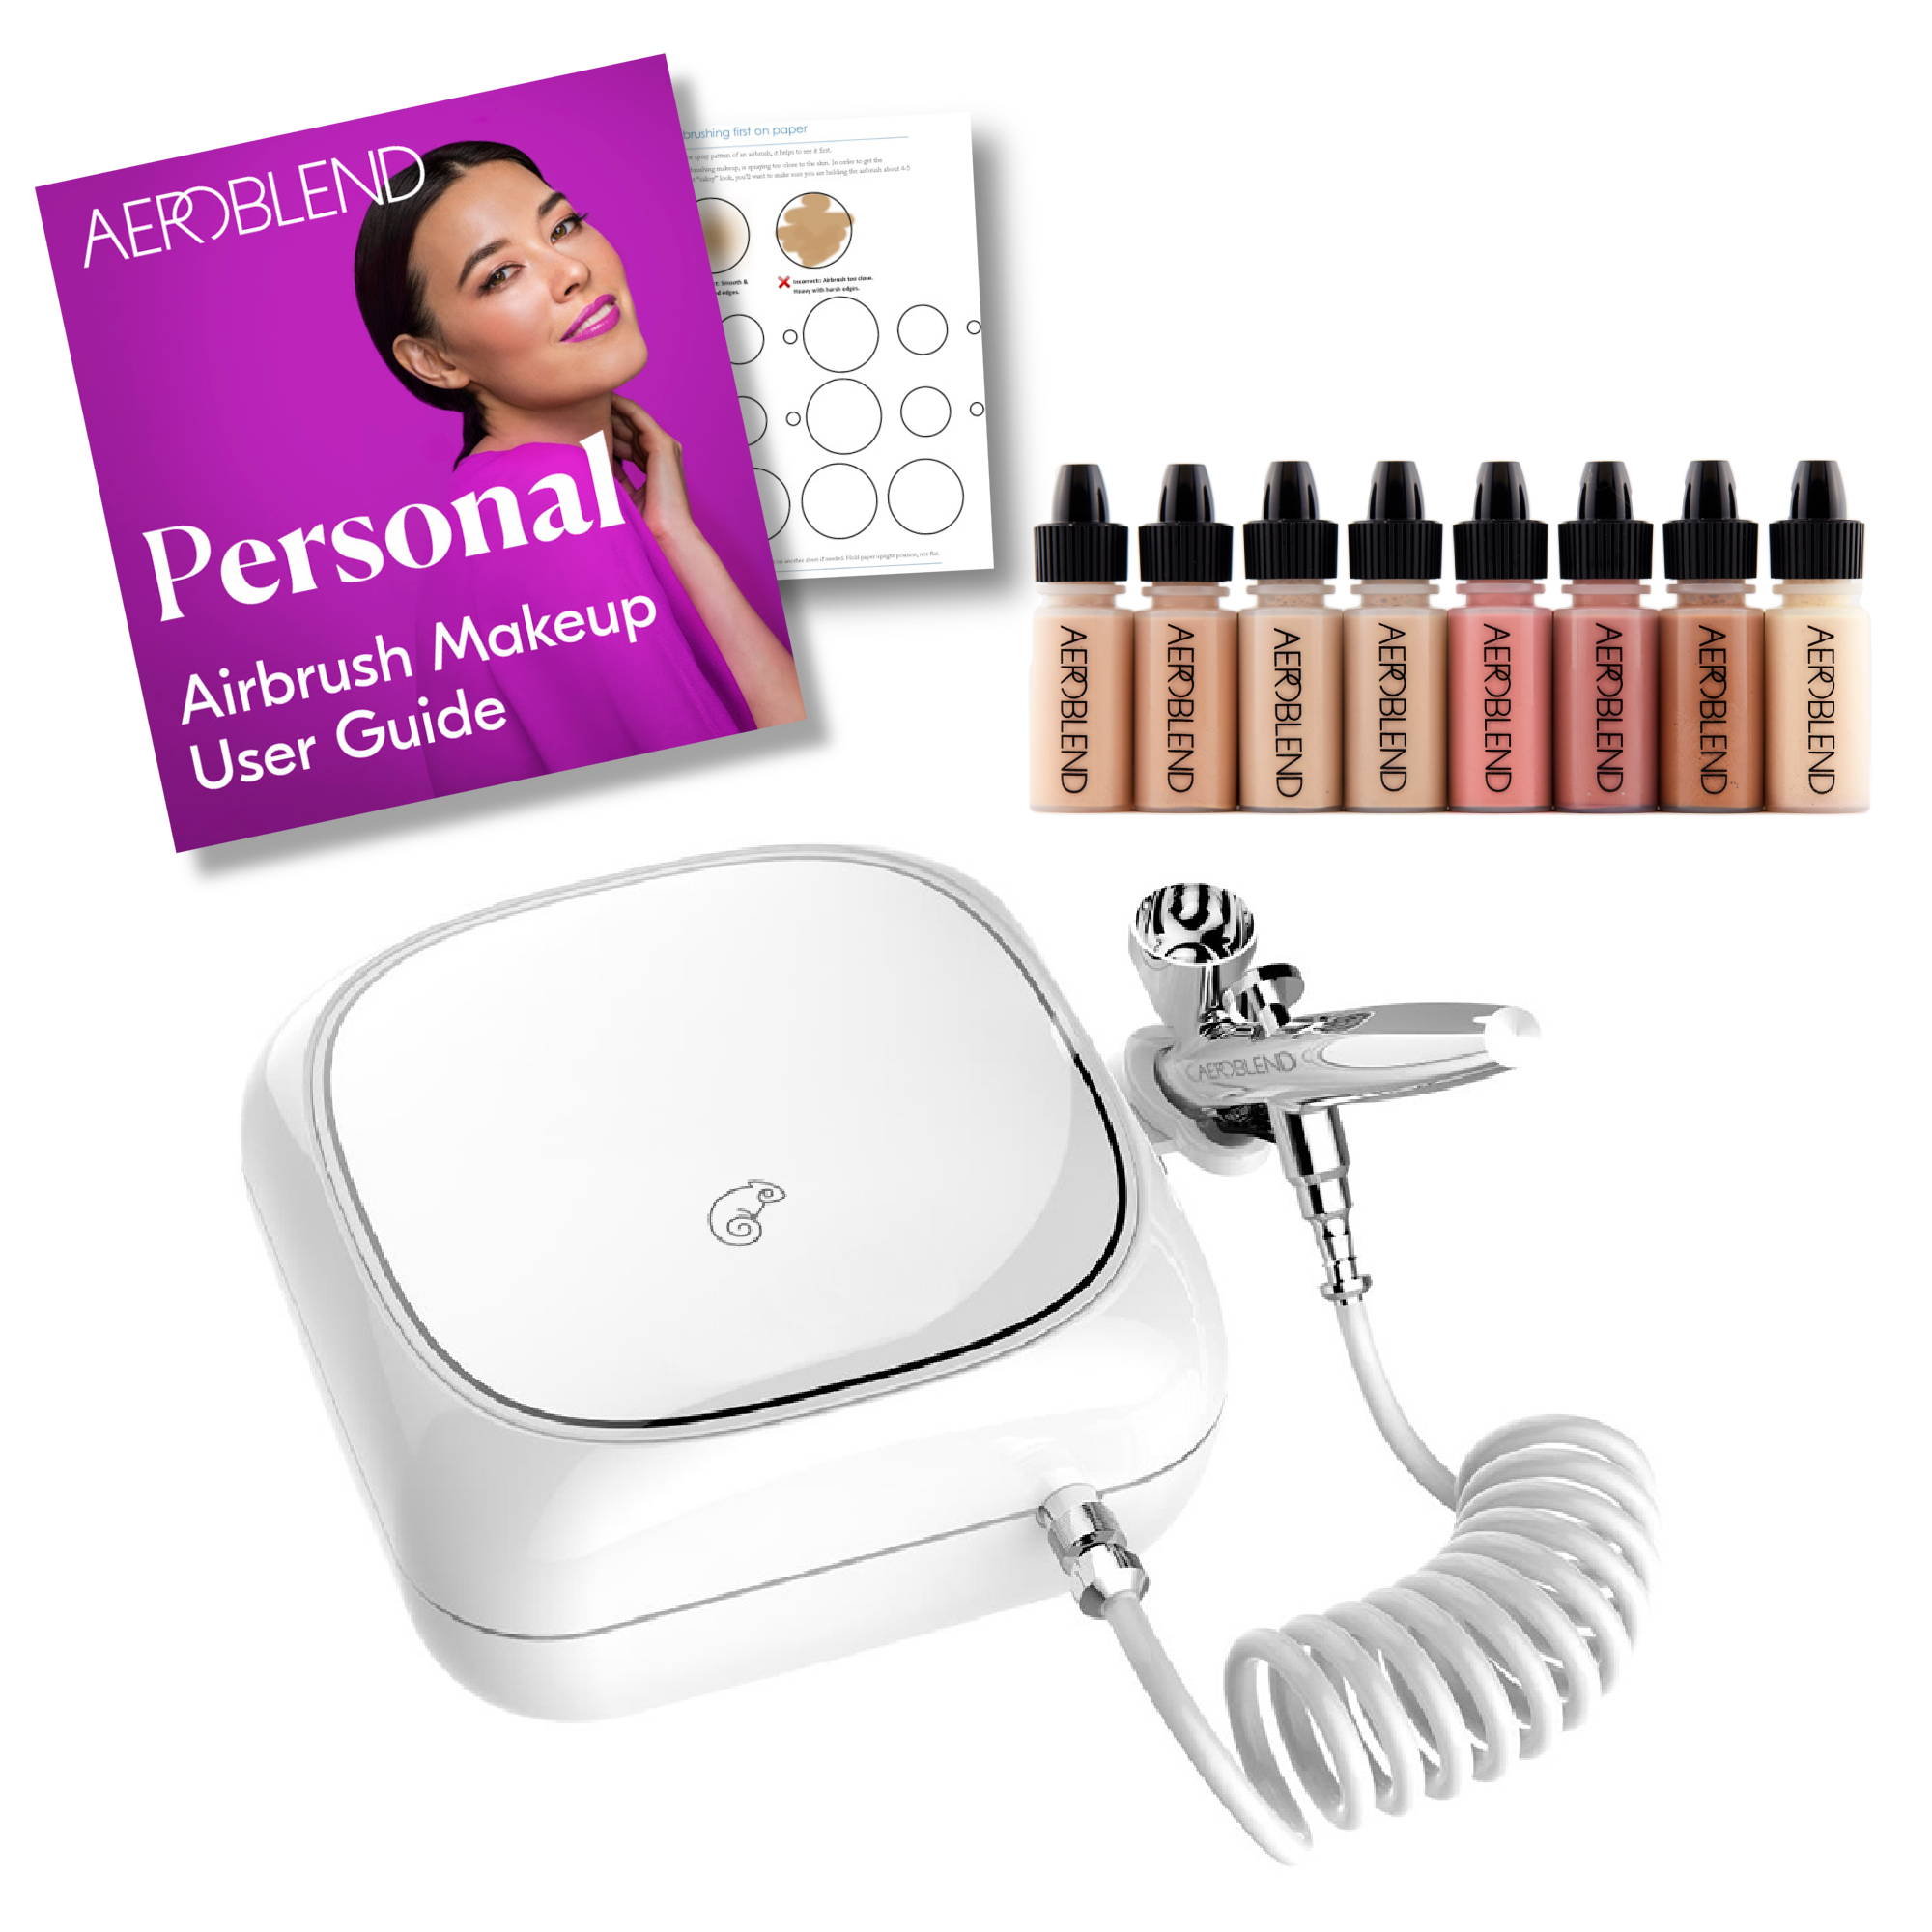 Professional Airbrush Makeup Kit, Makeup Tool Set